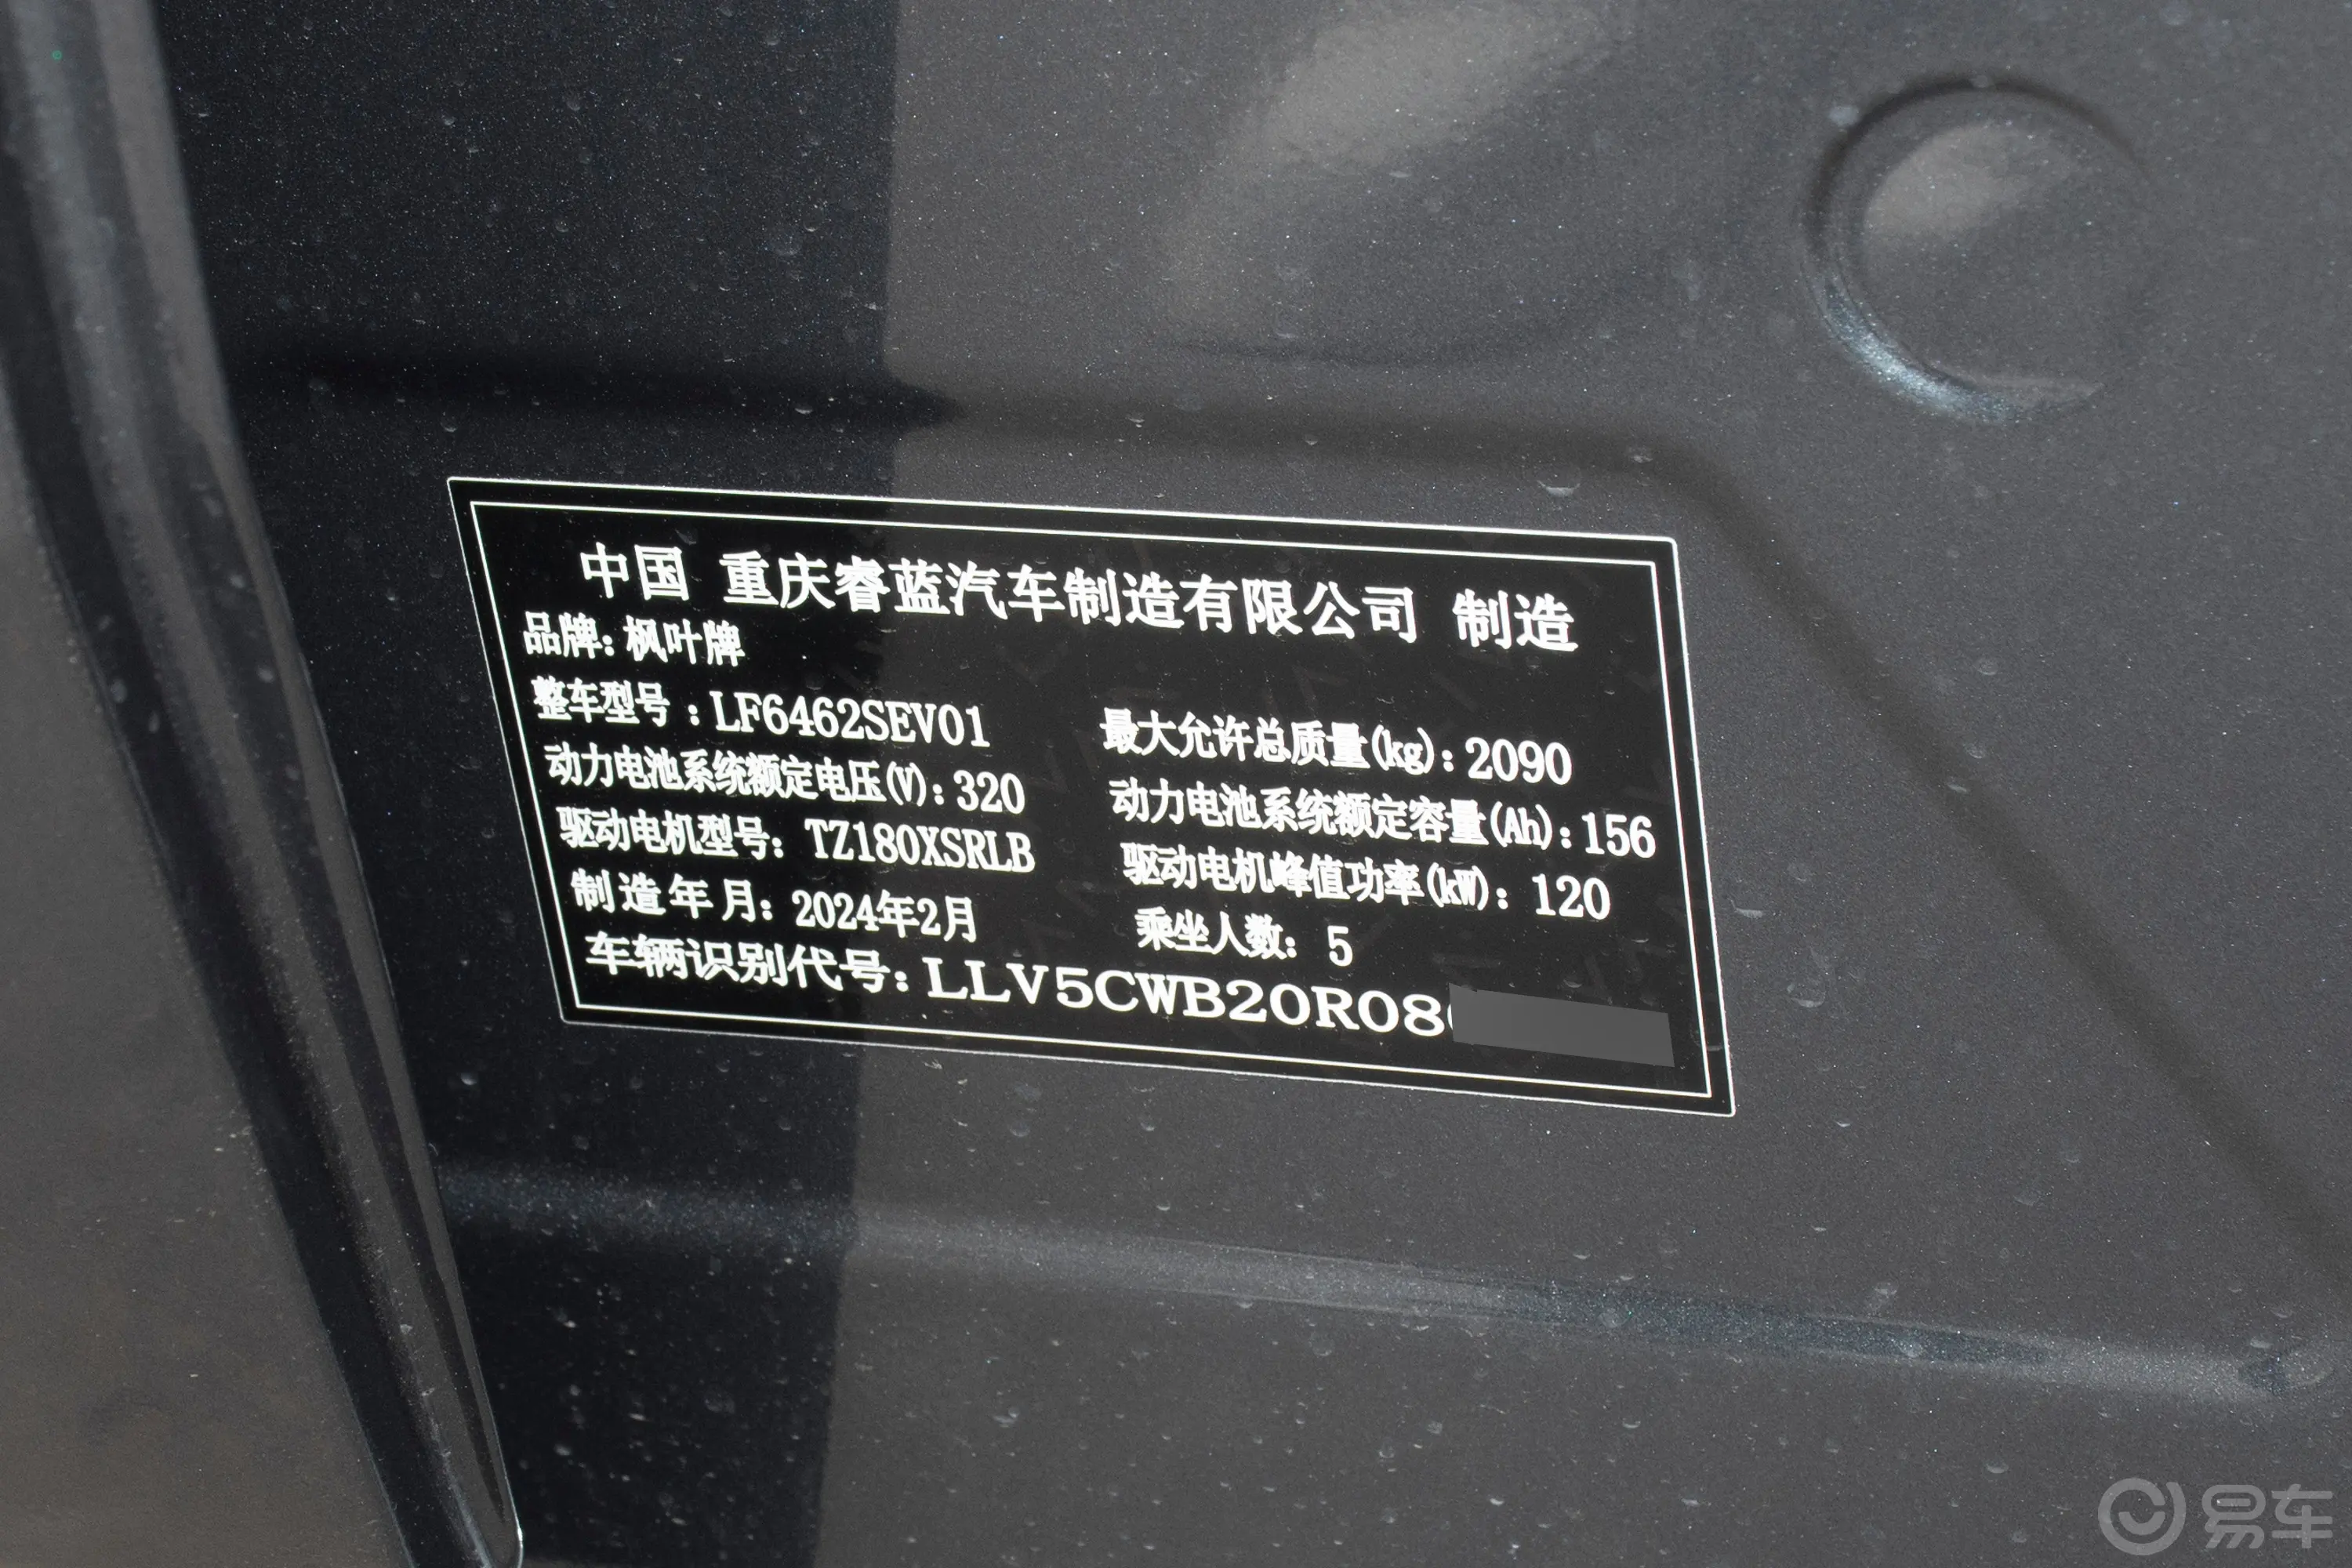 睿蓝7450km 前驱行政版车辆信息铭牌